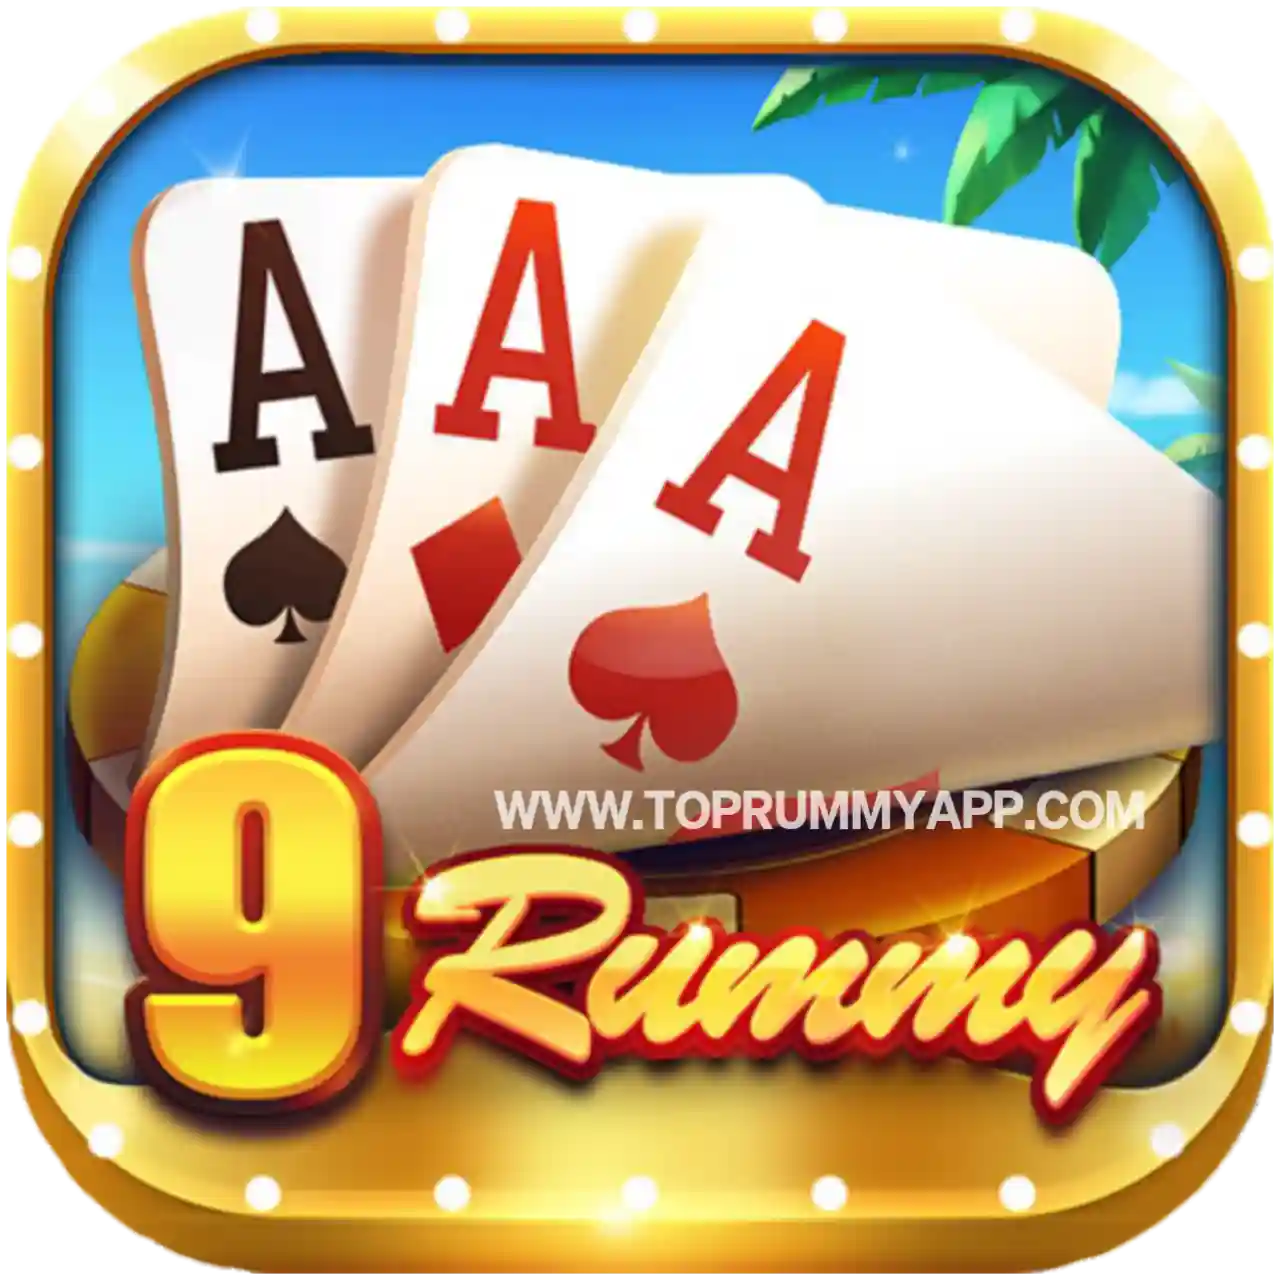 9 Rummy Apk Download - Top 5 Rummy App List 41 Bonus